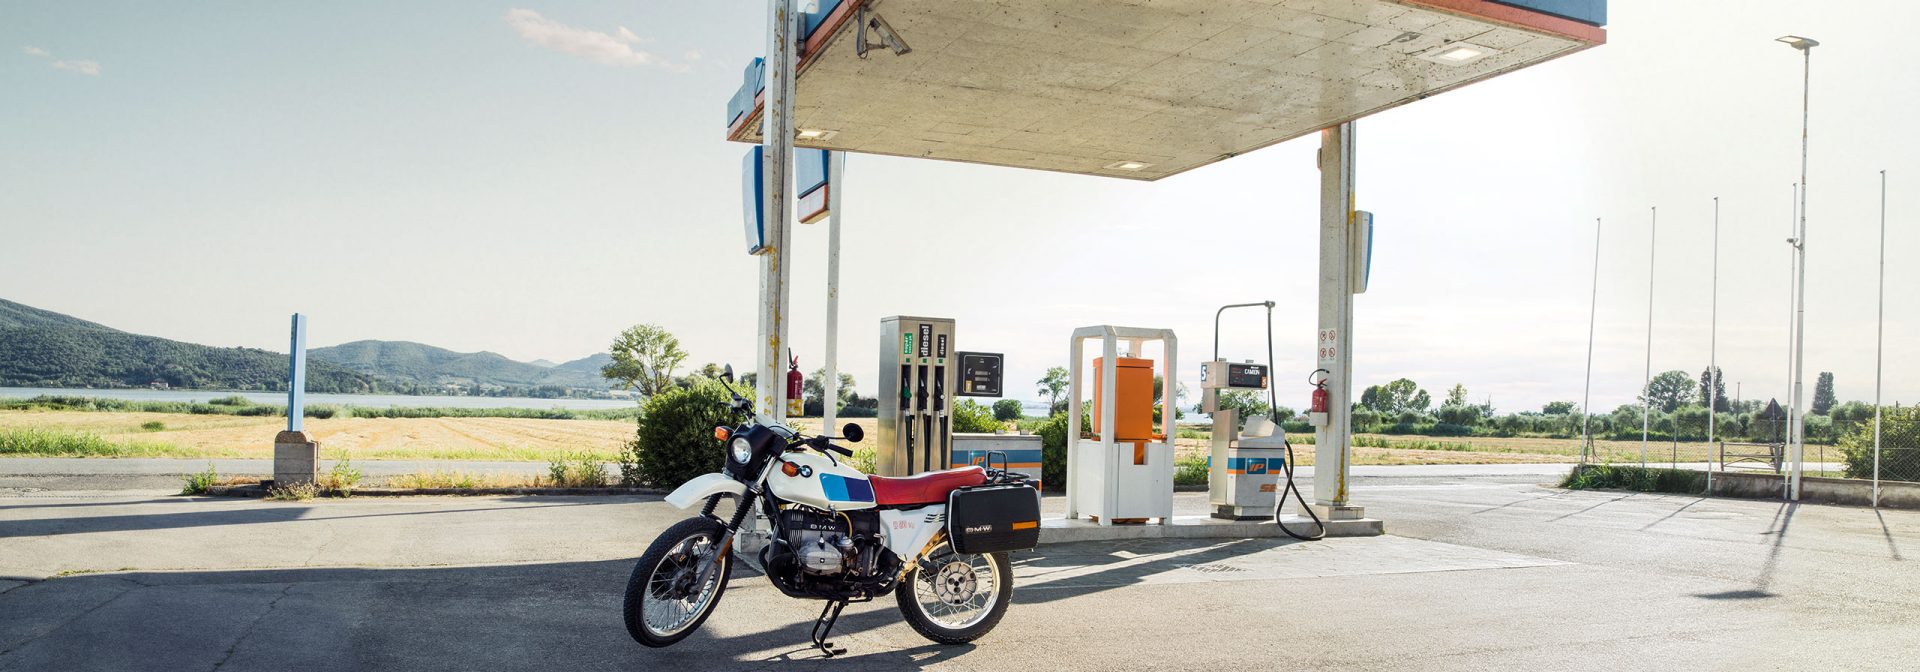 Ein Motorrad wurde vor einer Tankstelle geparkt